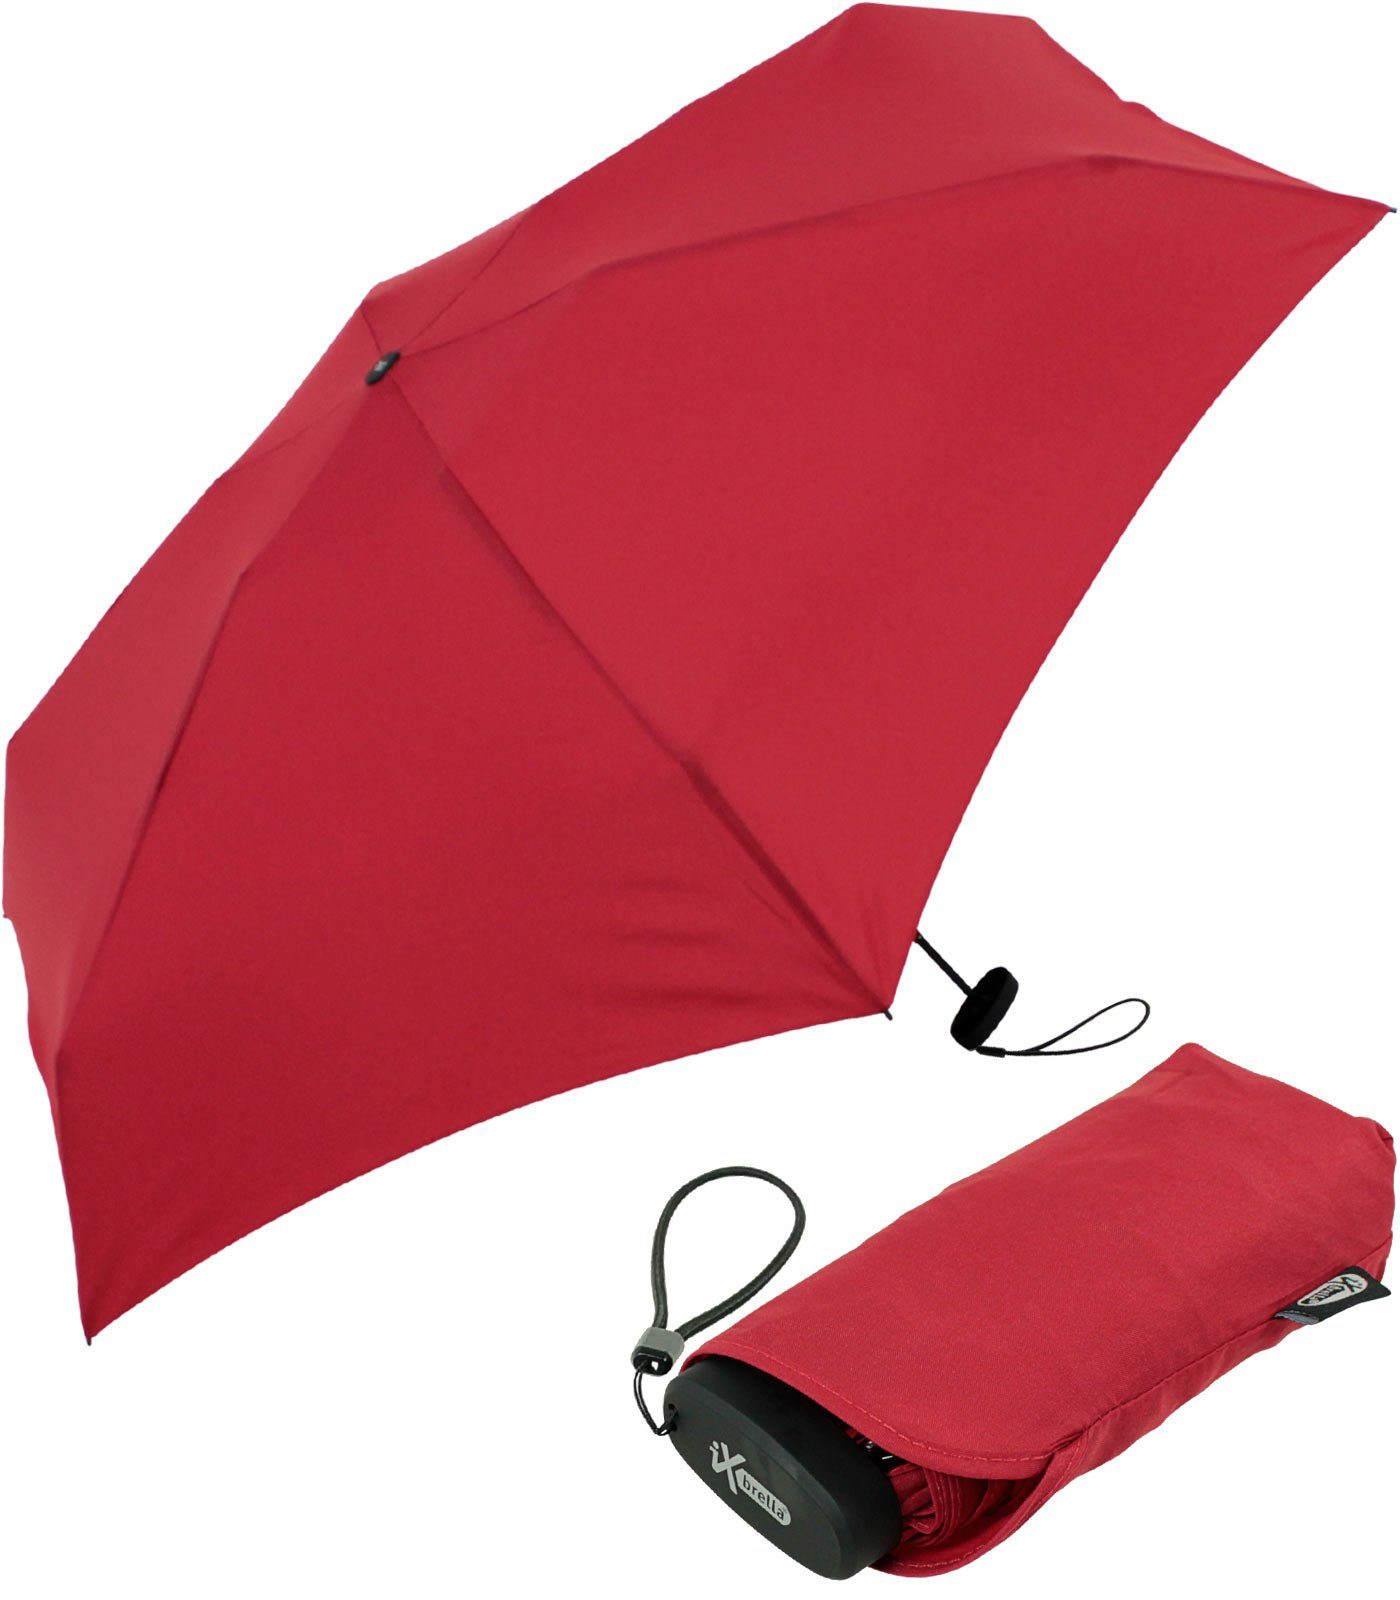 Blau Taschenschirm ShengXuan Ultra Mini Regenschirm Leicht Kompakt Winddicht Regenschirm UV Schutz Visier Regenschirm Robust und Portable Leichtk Kompakt Reiseschirm,Frauen MädchenIhr Intimpartner 